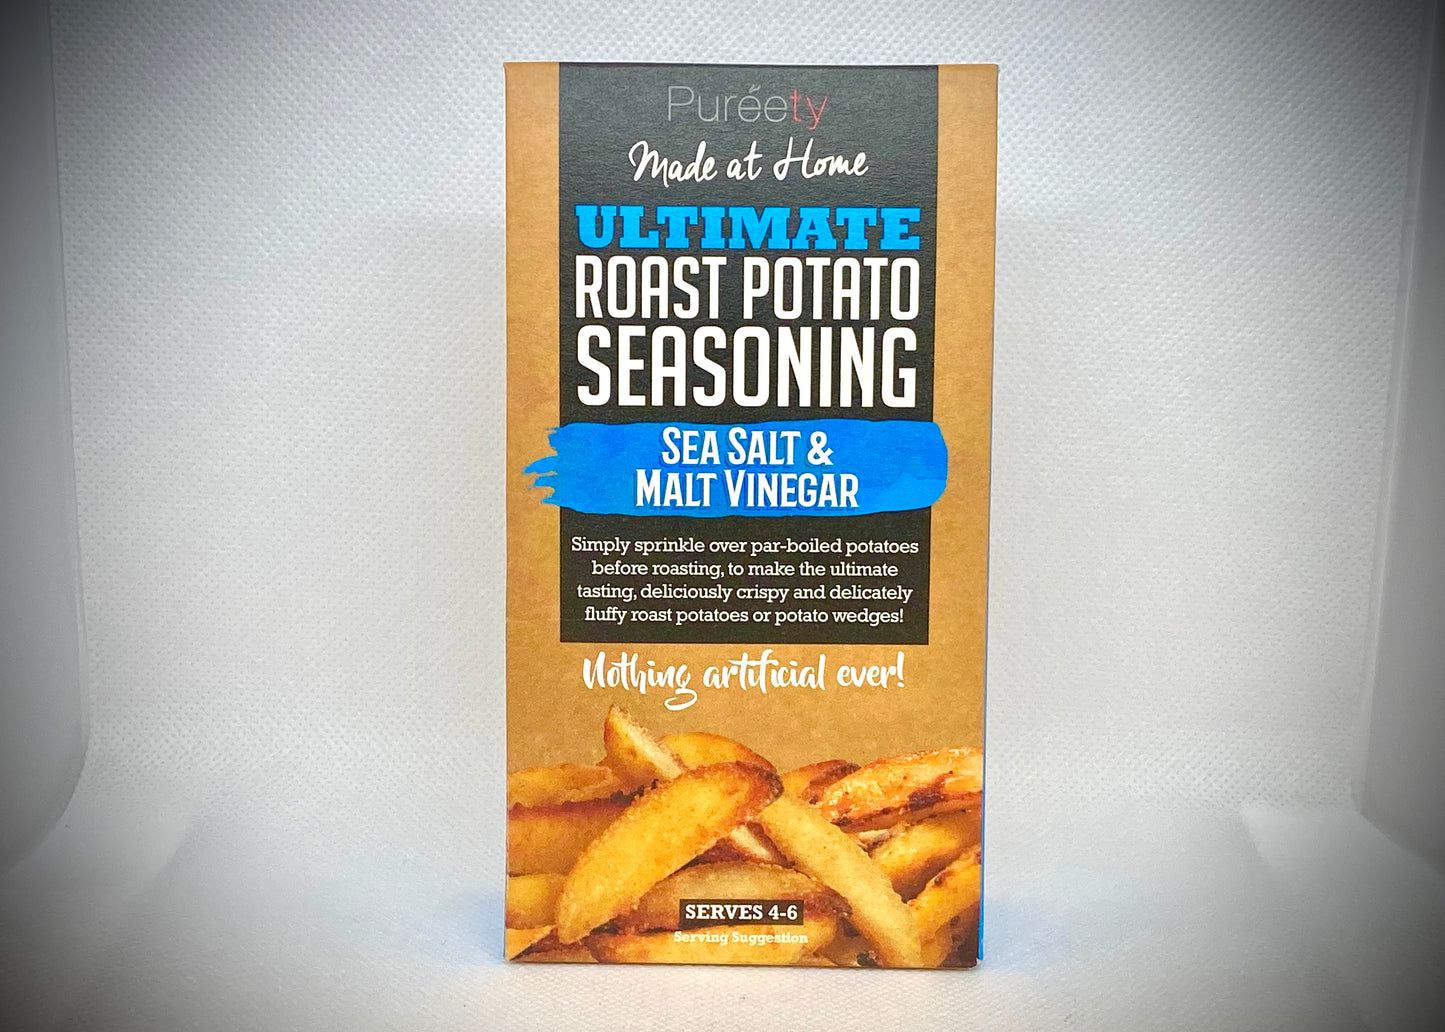 Sea Salt & Malt Vinegar Potato Seasoning